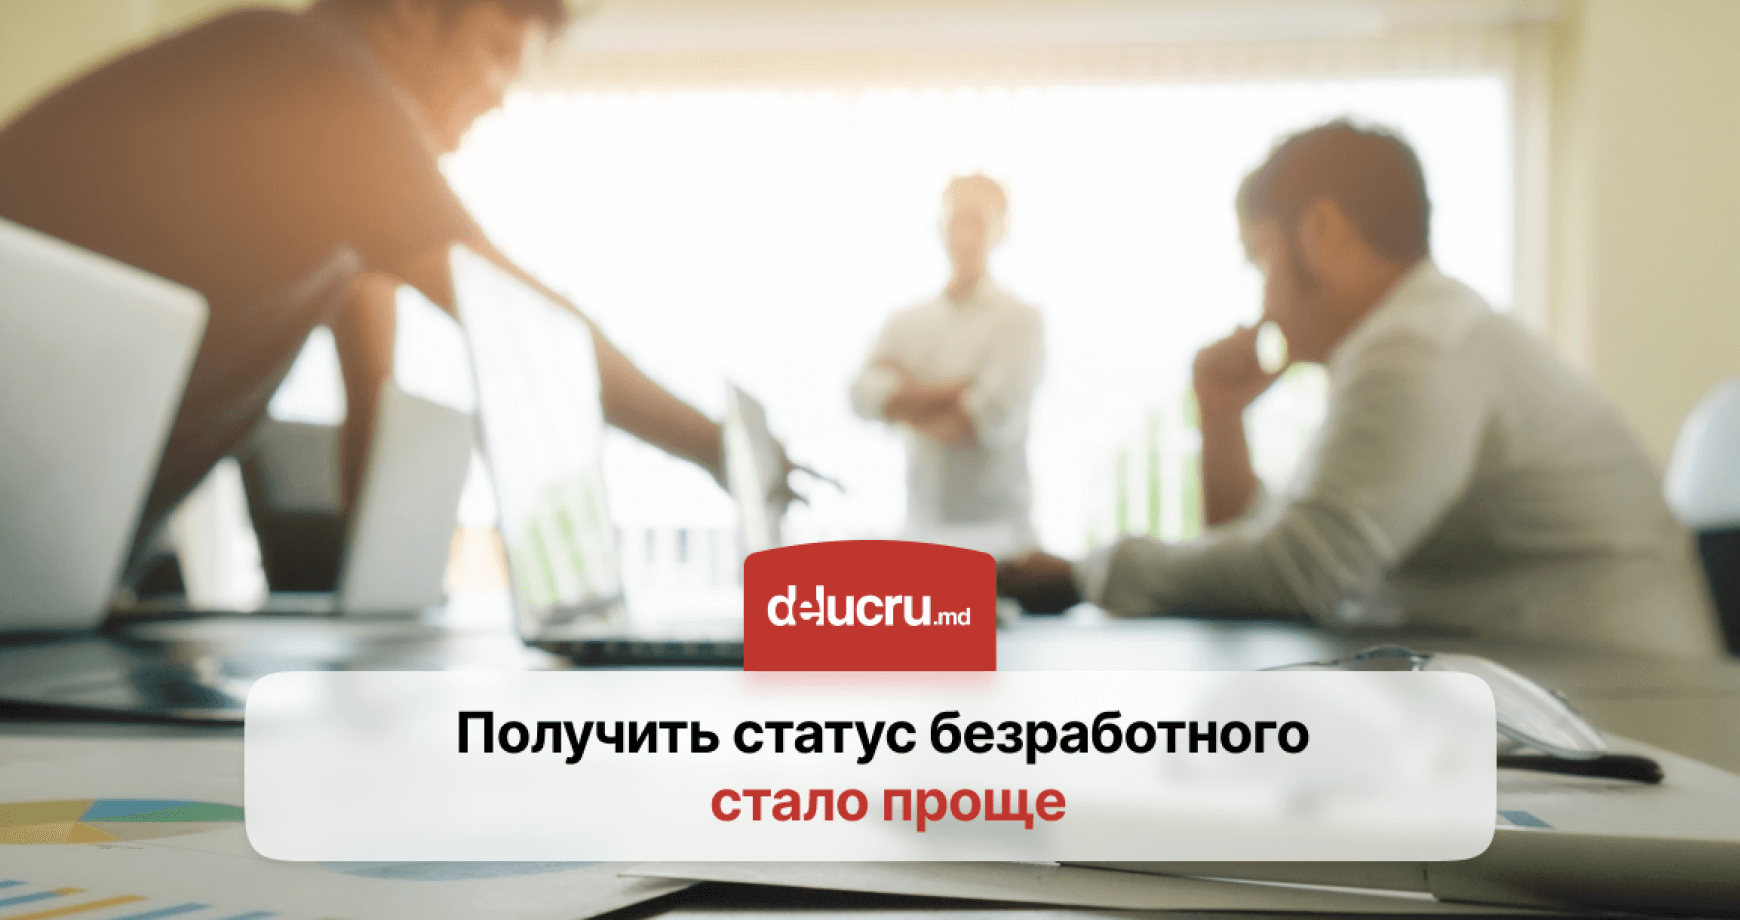 Заявку на получение статуса безработного в Молдове можно подать онлайн